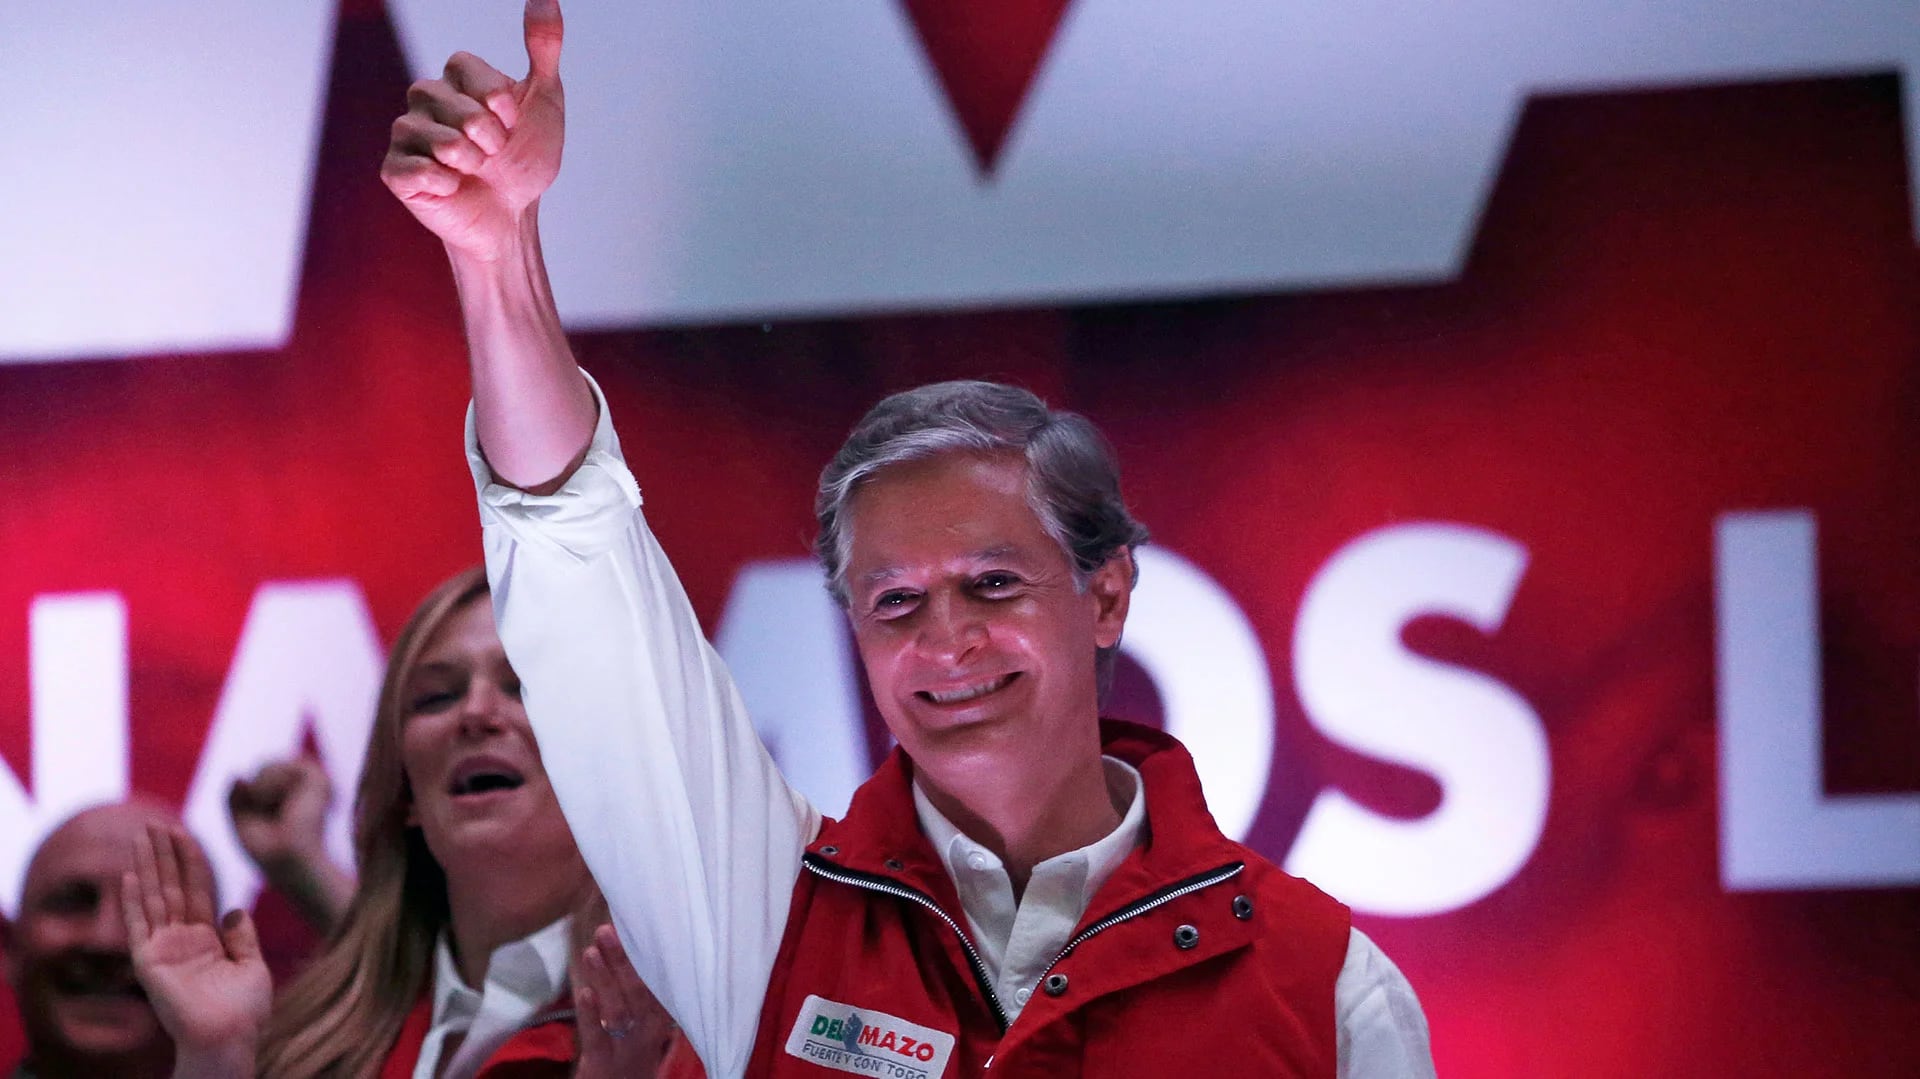 Alfredo del Mazo, el candidato del PRI, al adjudicarse la victoria en el Estado de México (Reuters)